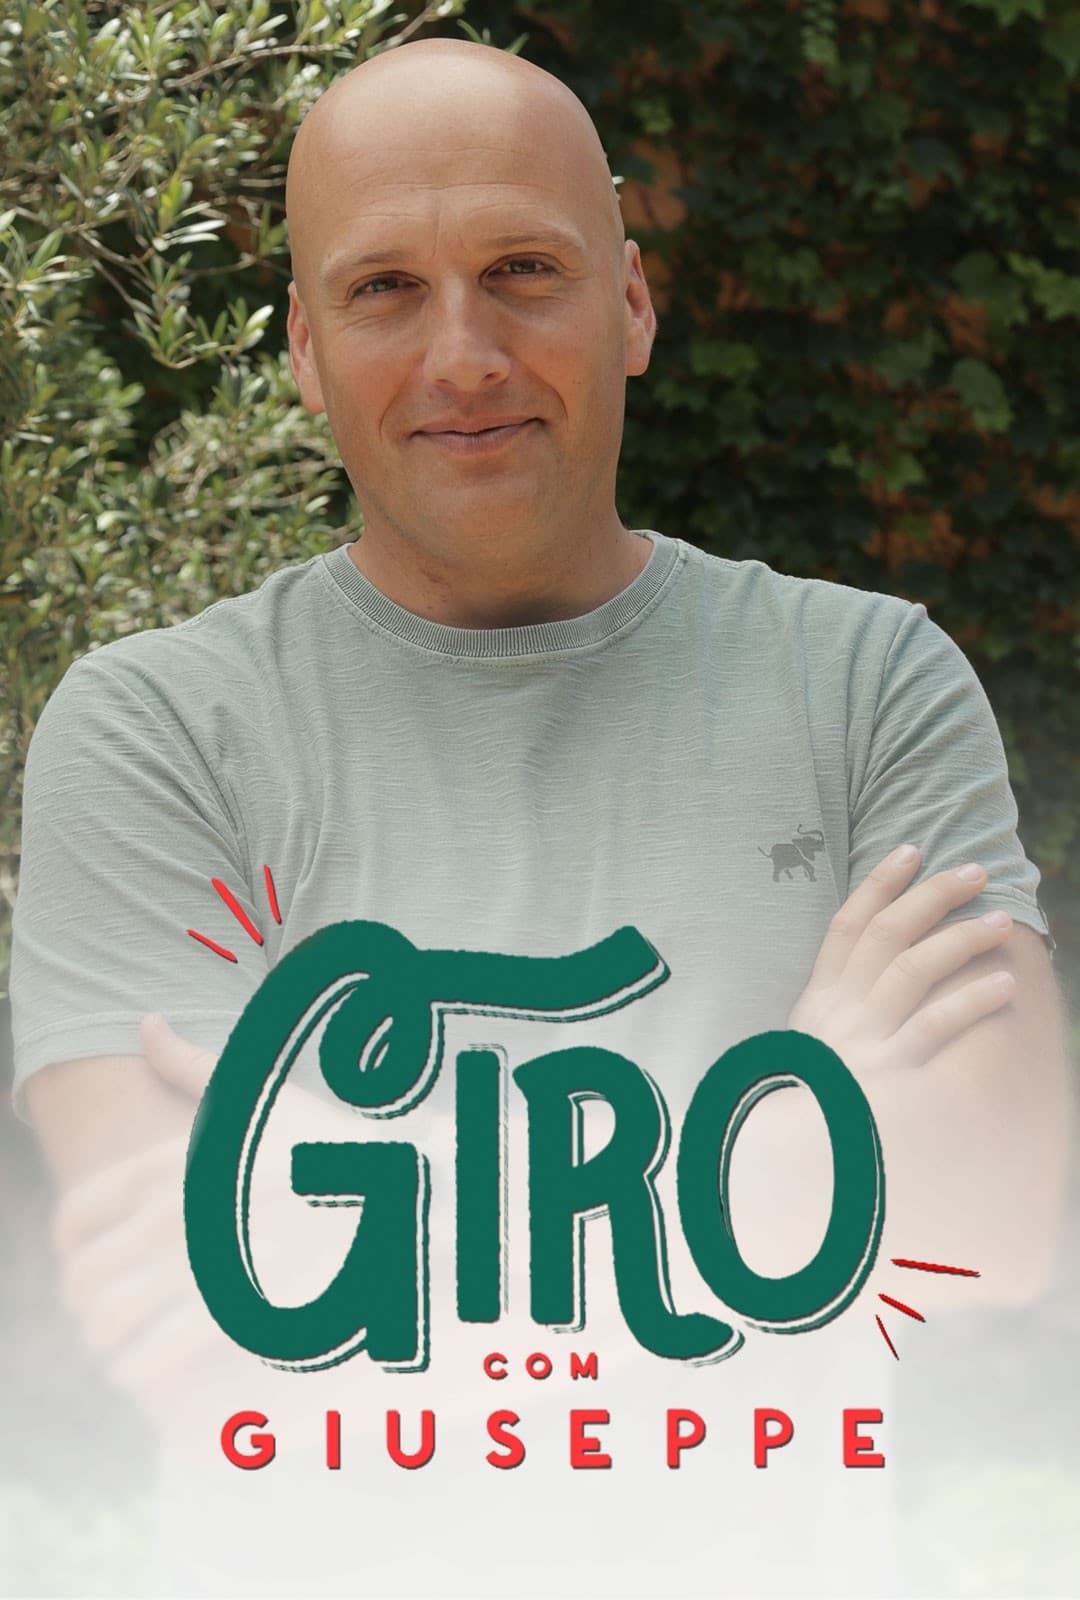 Giro com Giuseppe